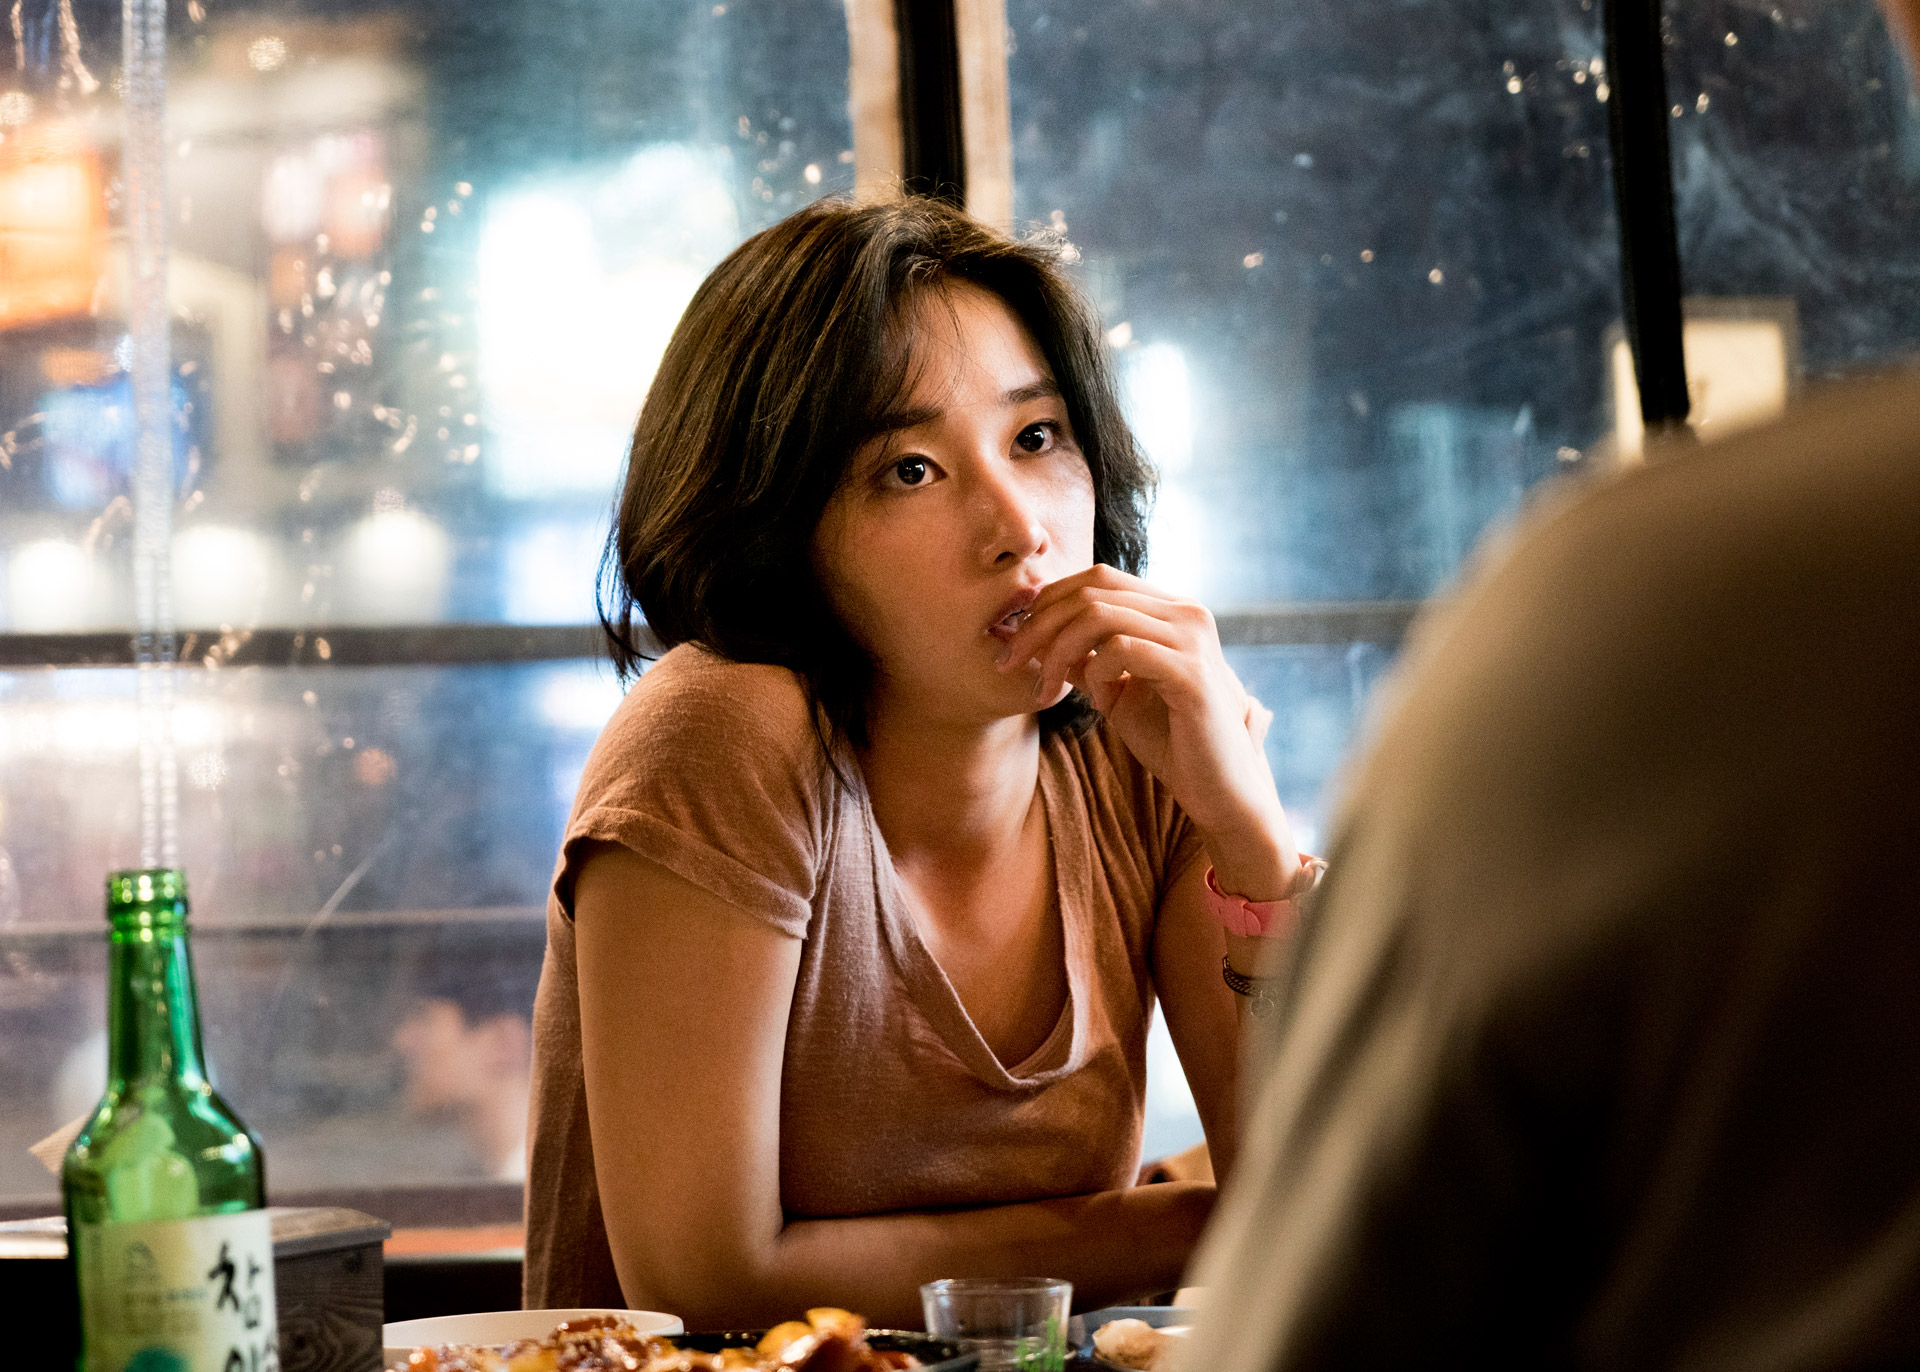 Phim của Yoo Ah In được chọn làm đại diện cho phim Hàn Quốc tại Oscar 2019 - Ảnh 3.